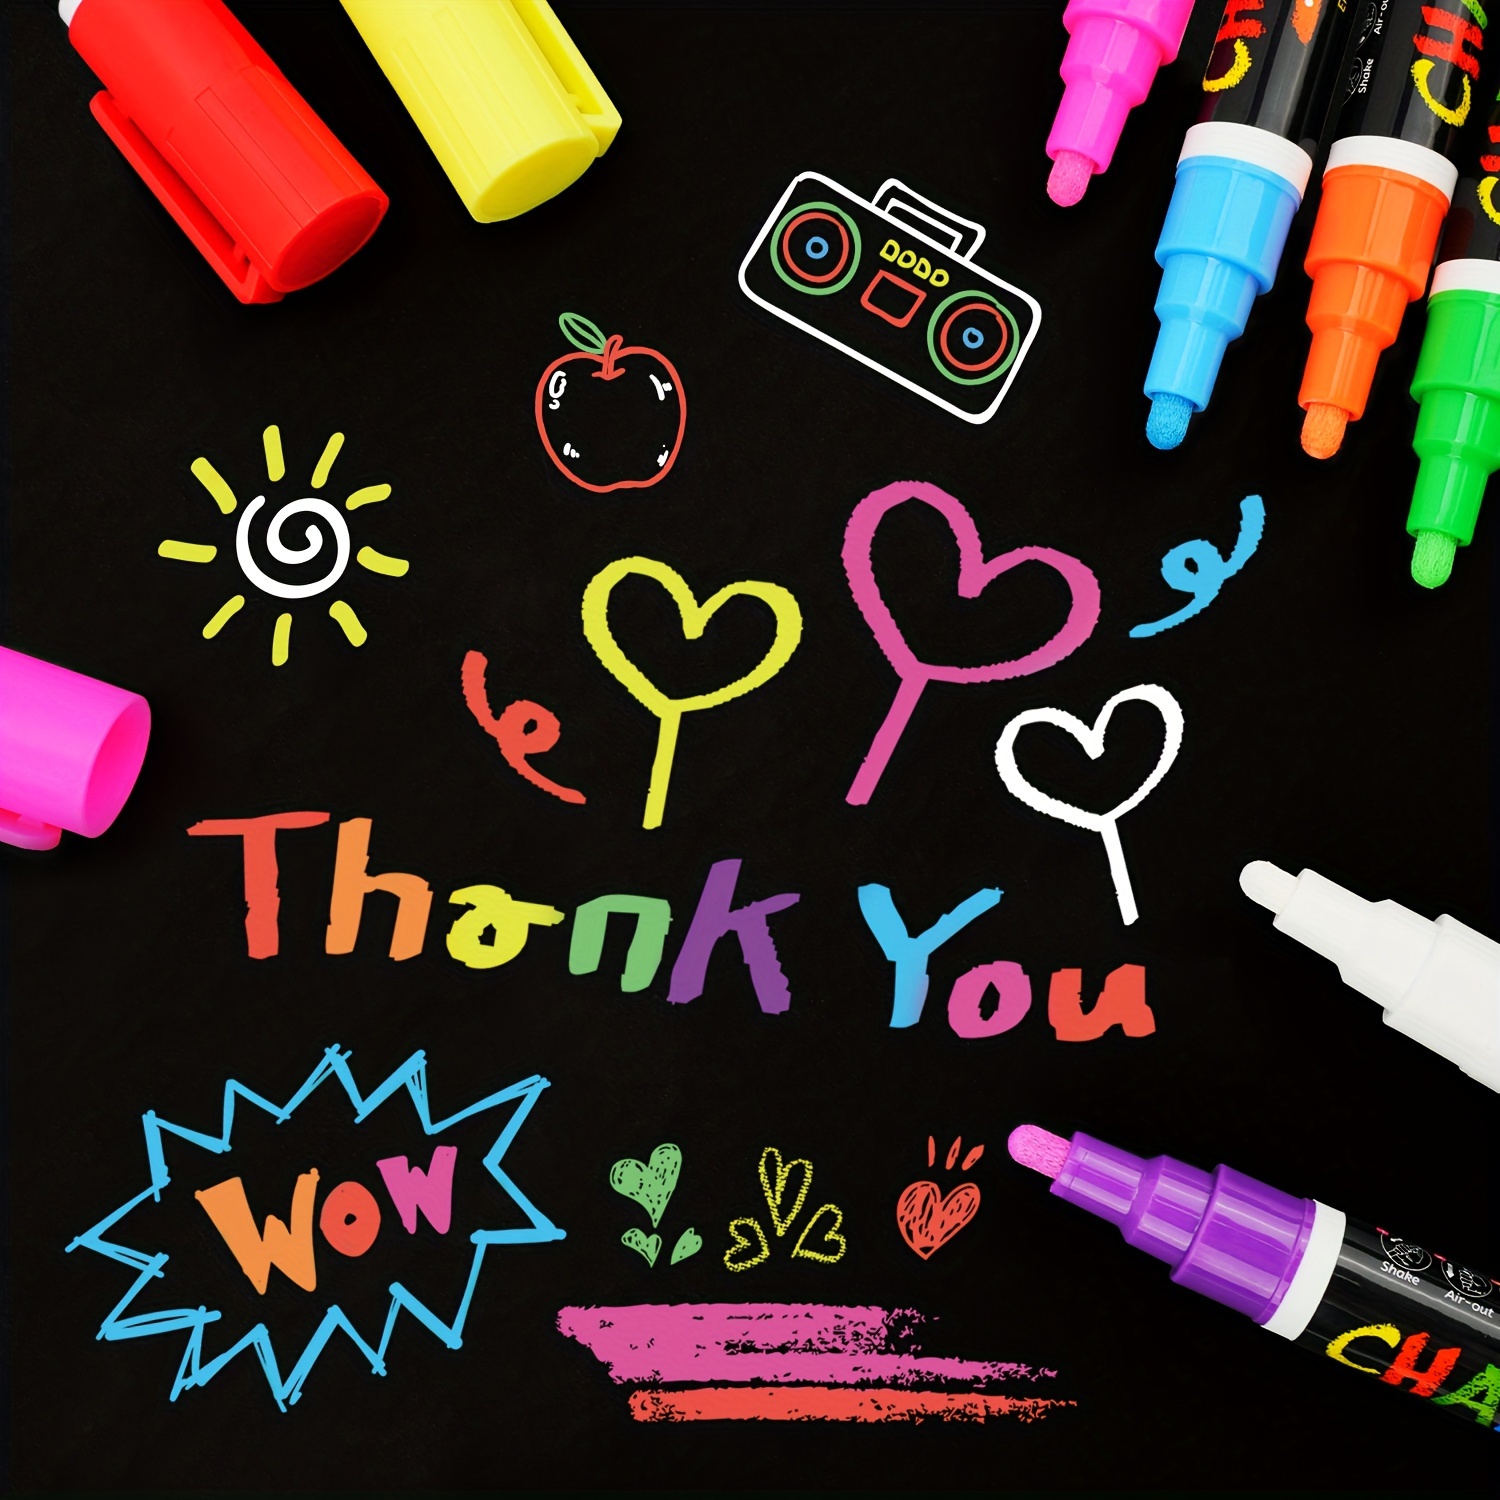 Chalk Markers, 8 Color Wet Erase Marker Pens, Chalkboad Markers